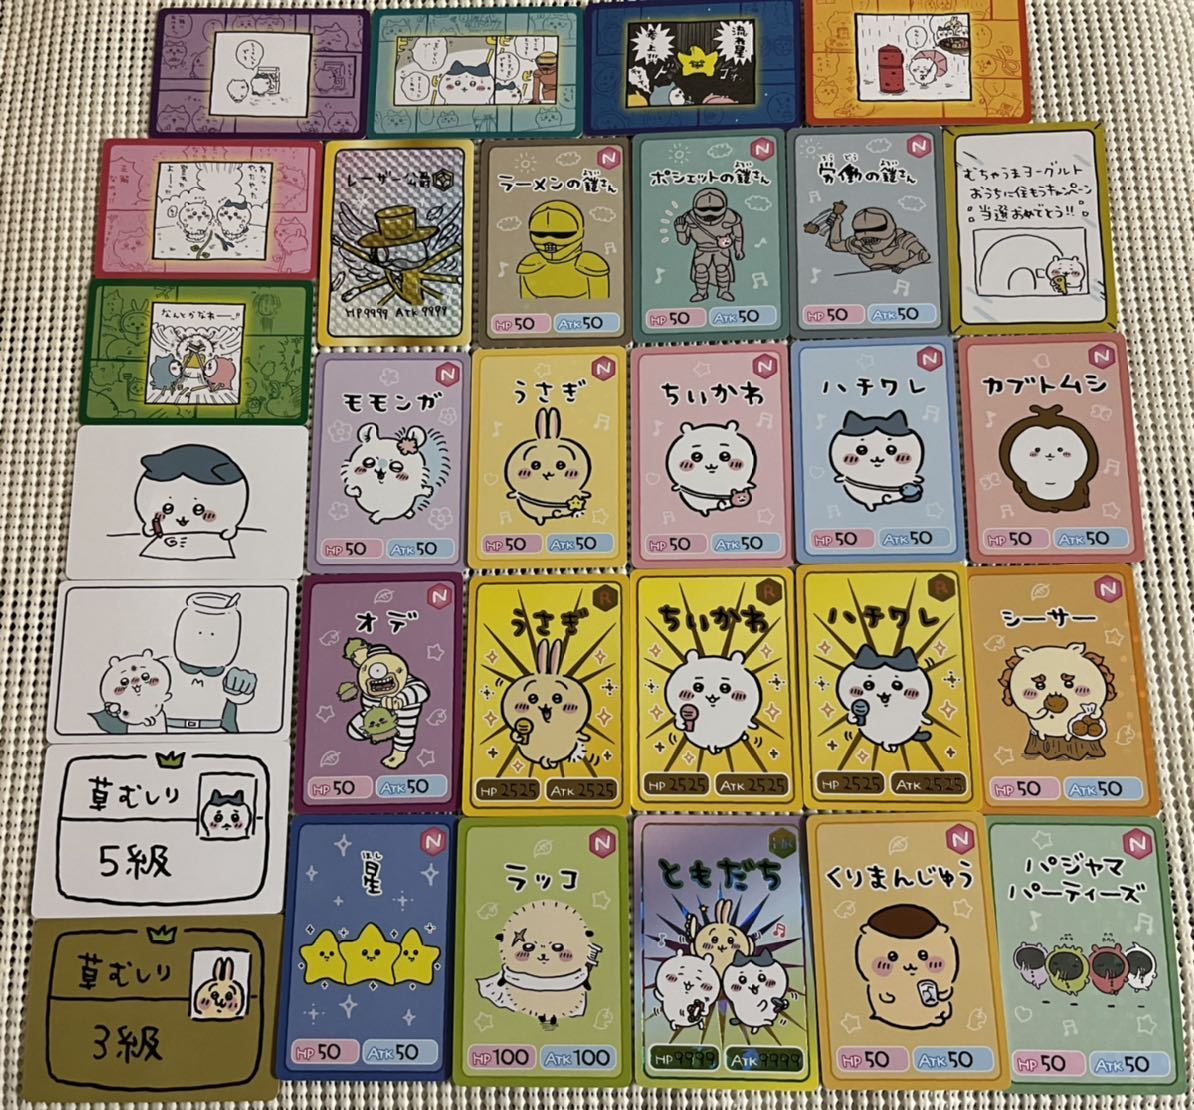 ちいかわ☆コレクションカードグミ☆全30種類フルコンプリートセット☆ハチワレ、うさぎ、くりまんじゅう、草むしり3級、草むしり5級など